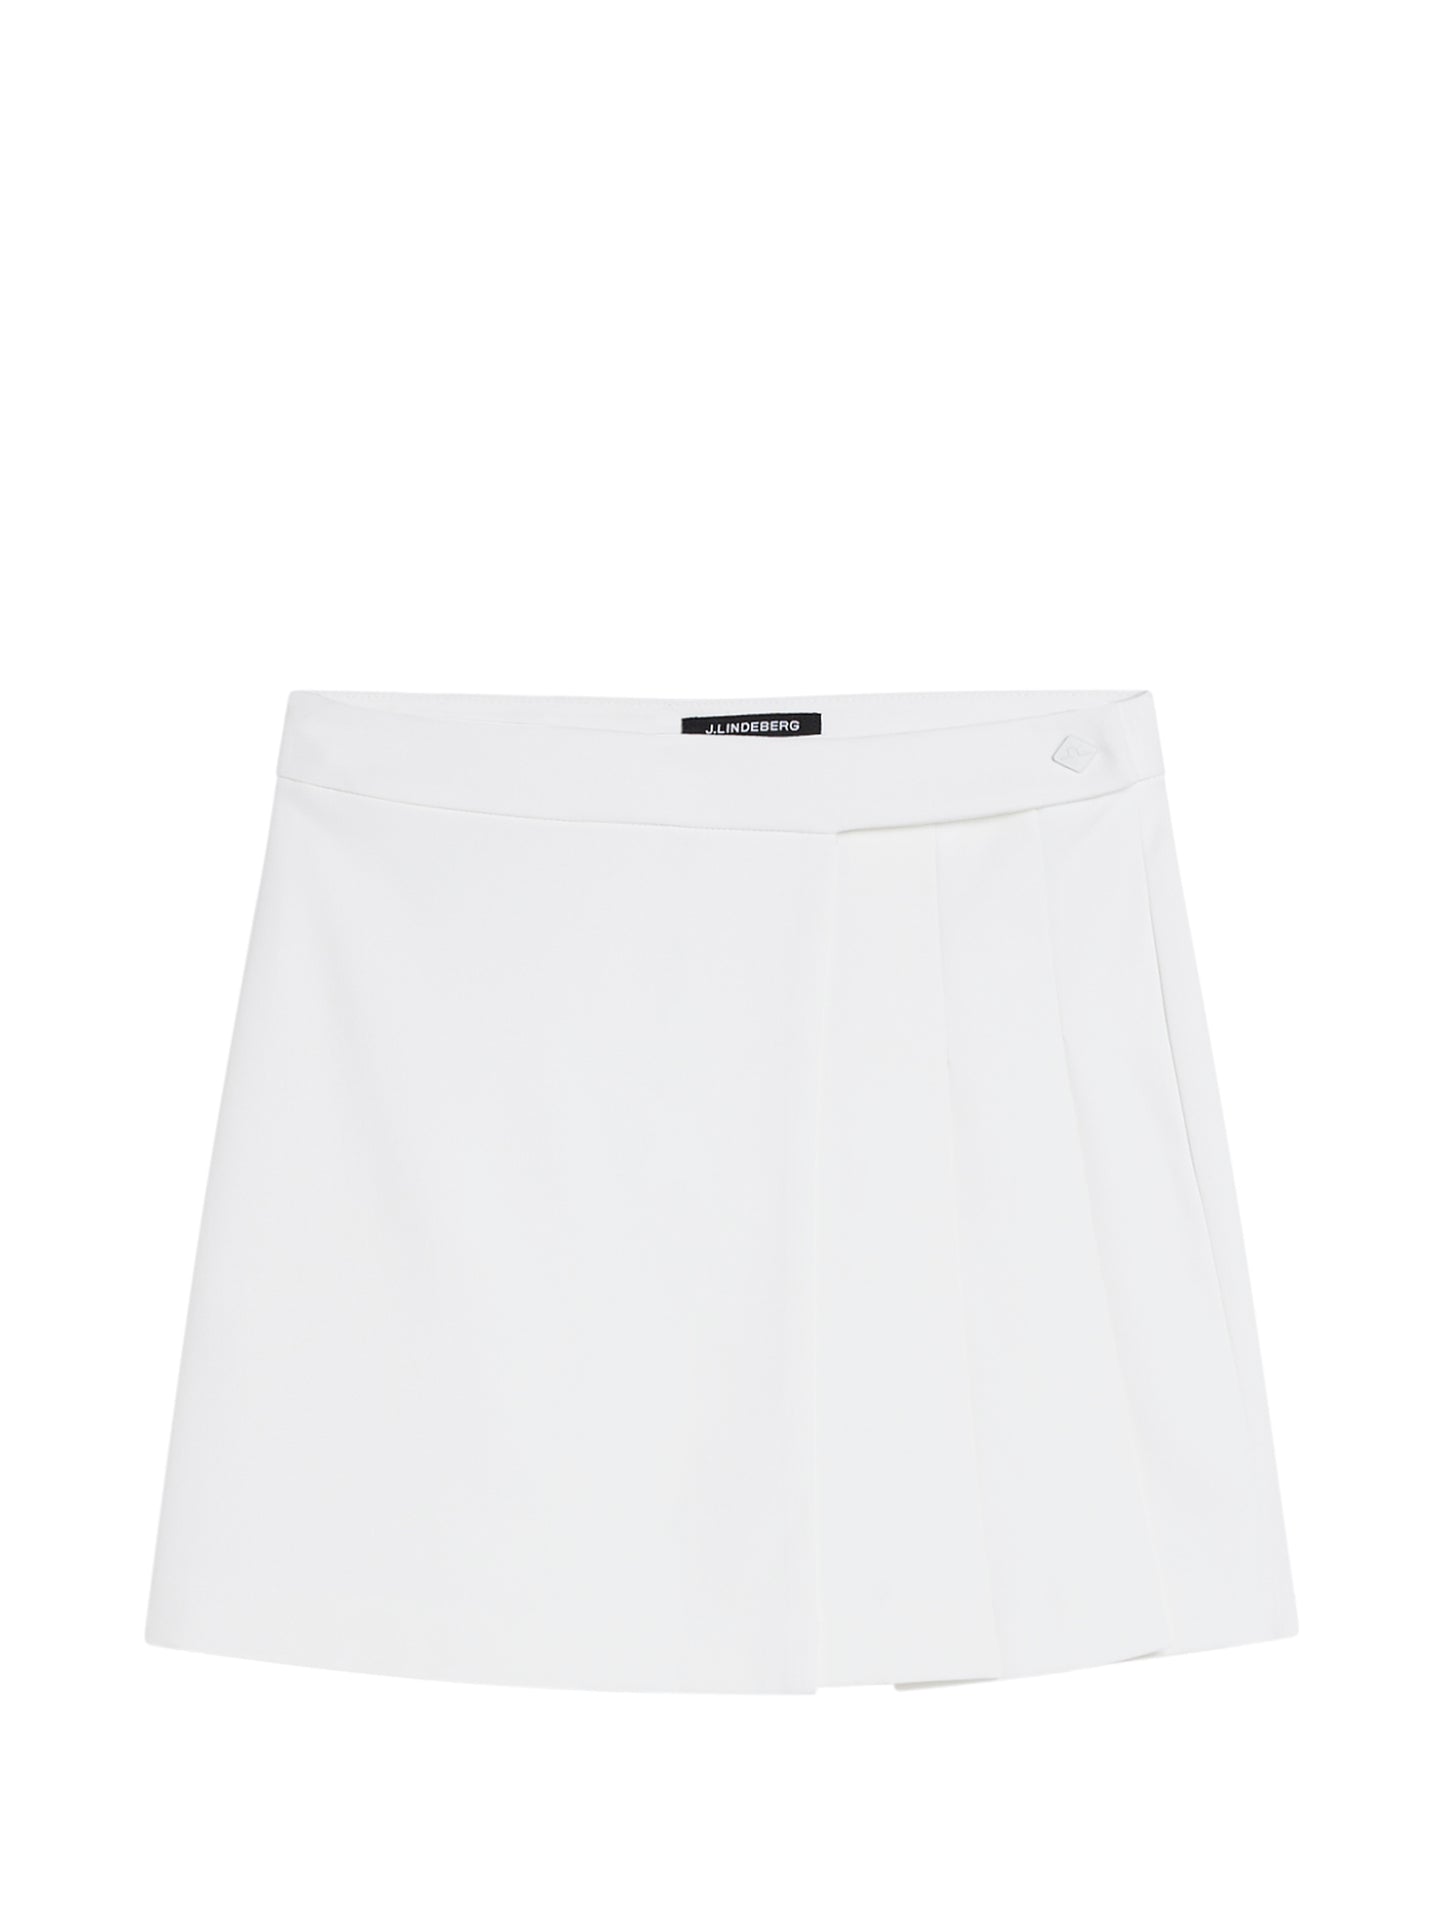 Cataleya Pleated Skirt / White